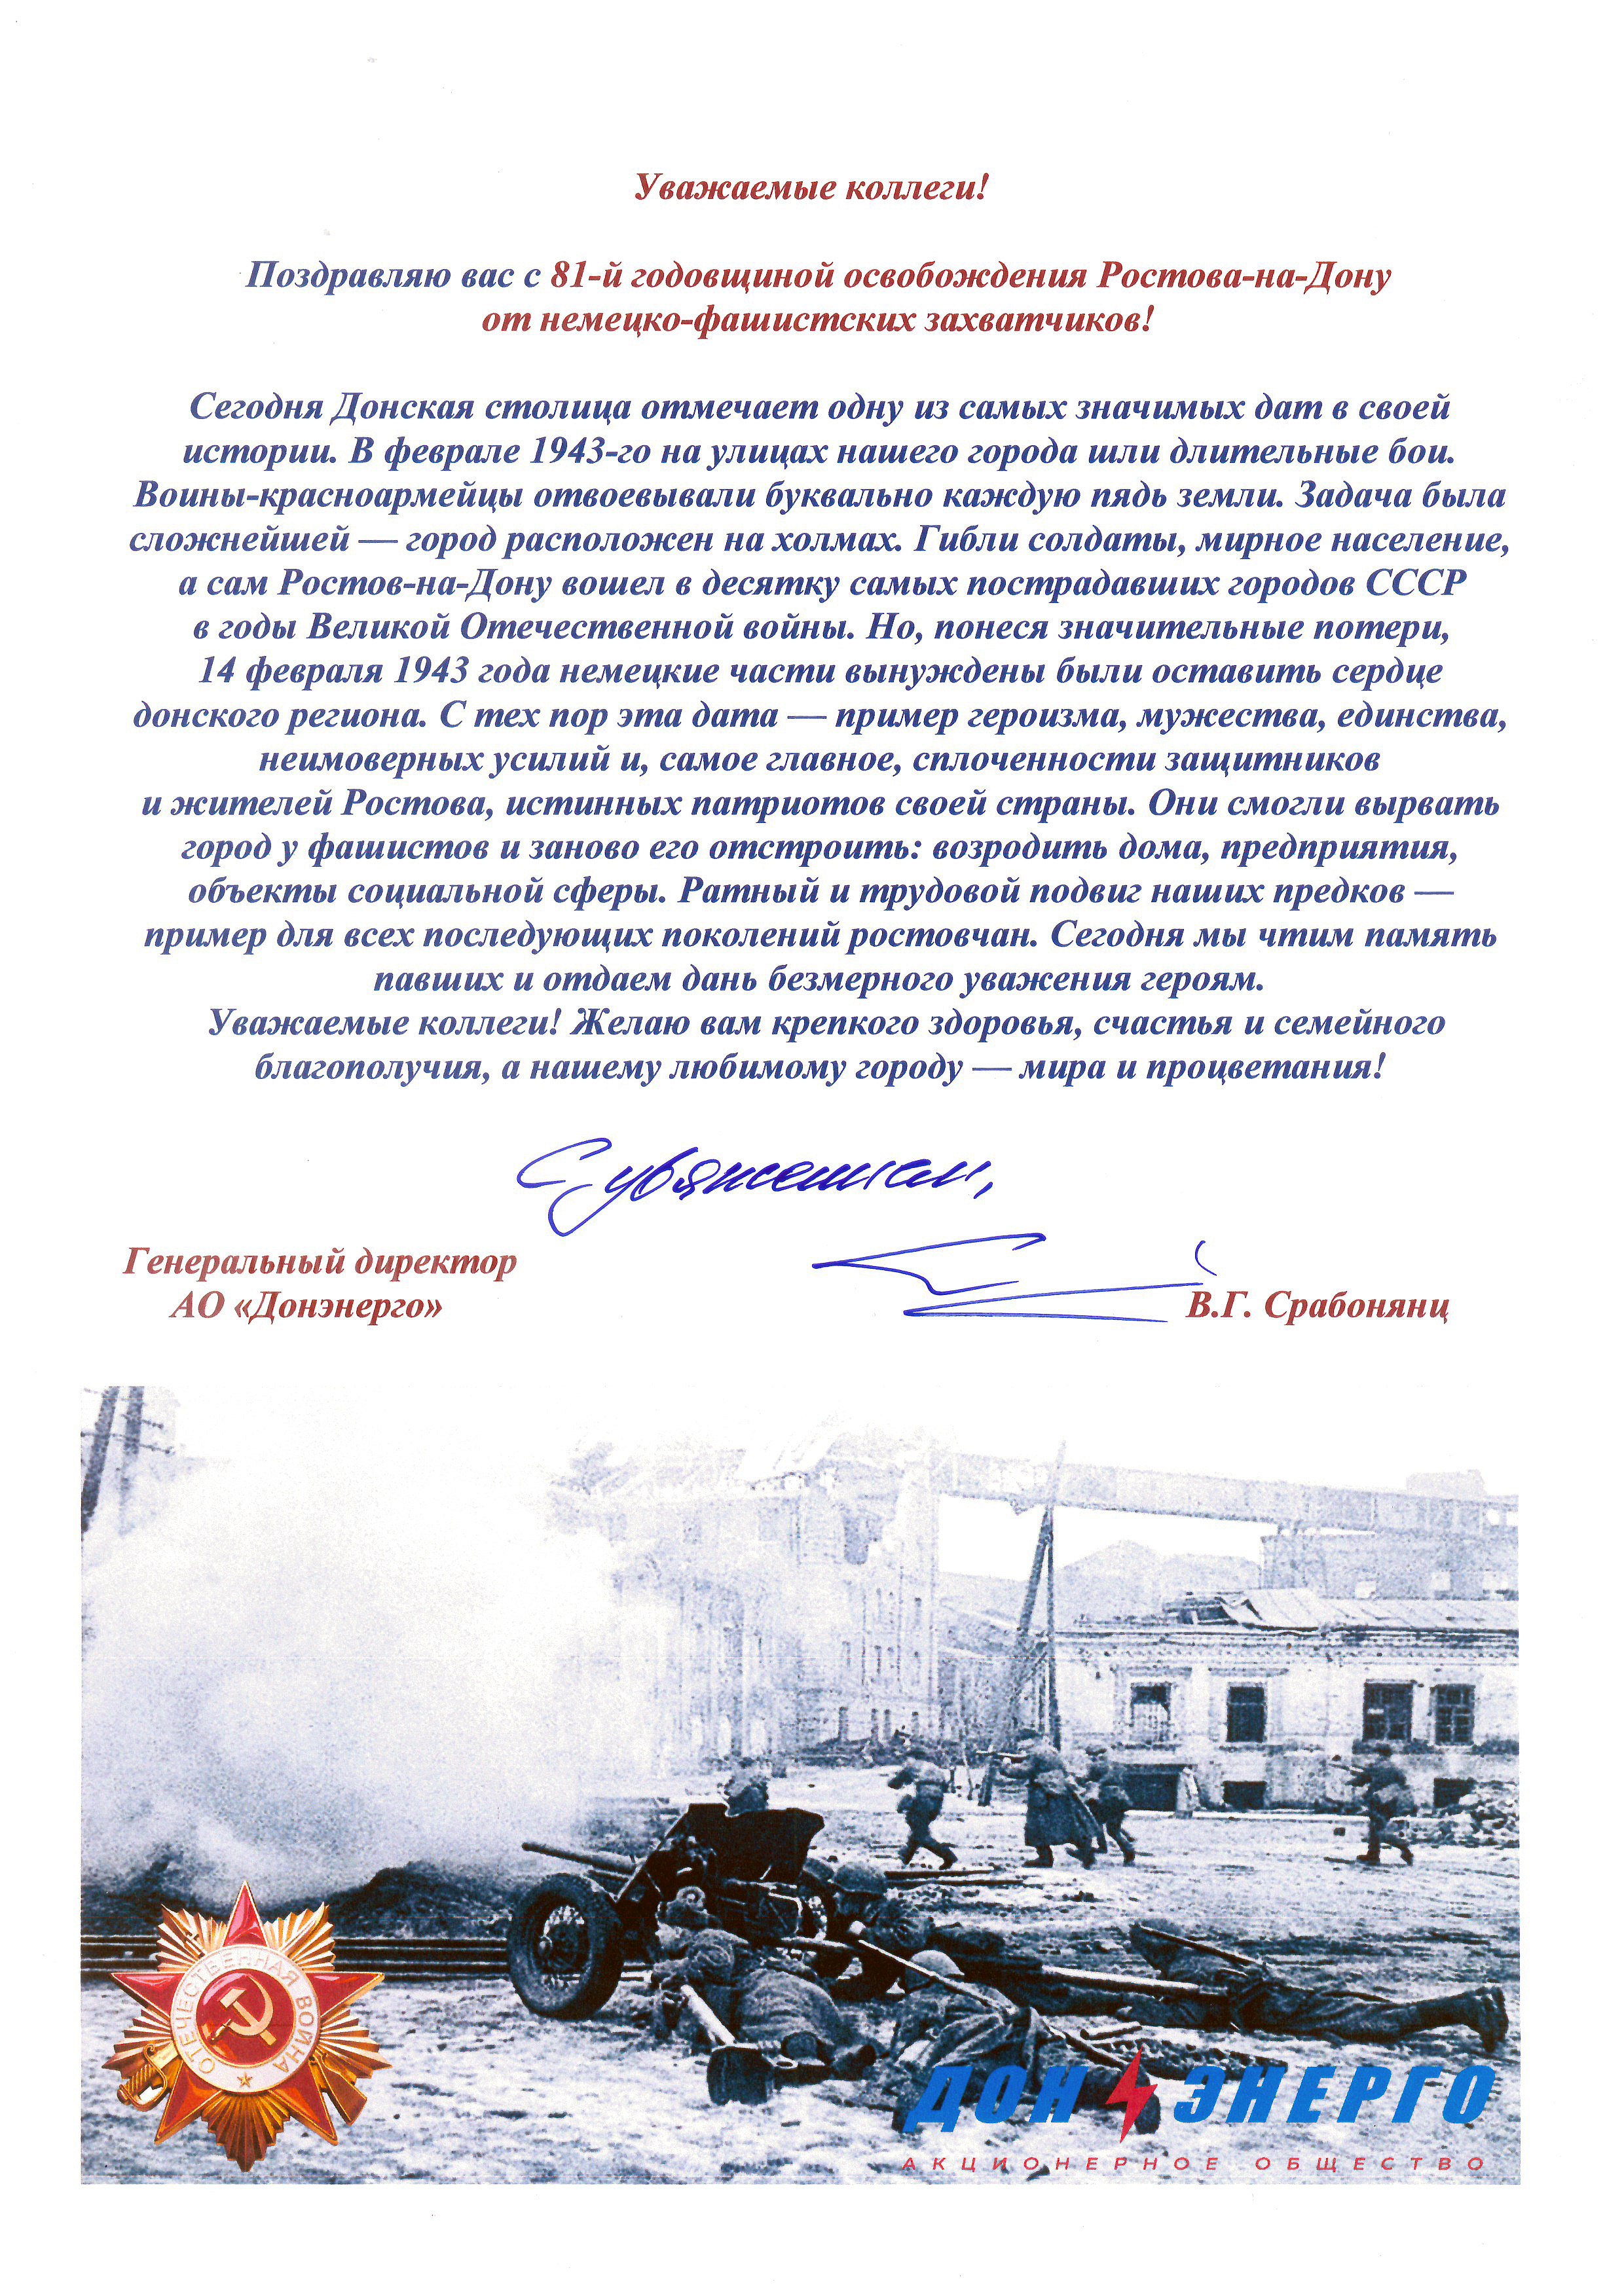 Поздравление с Днем освобождения Смоленской области от немецко-фашистских захватчиков